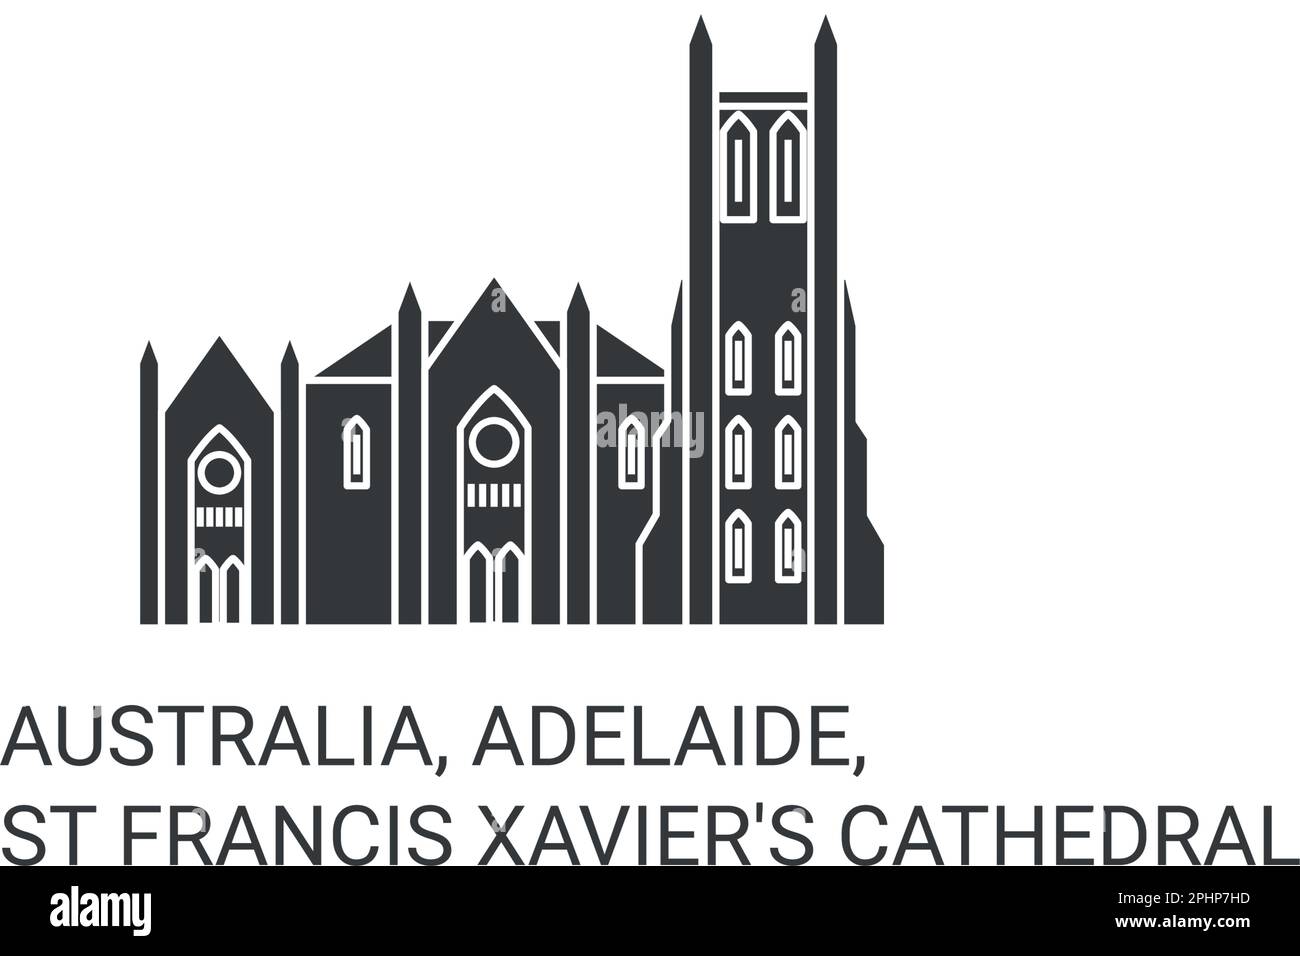 Australia, Adelaide, Cattedrale di San Francesco Saverio viaggio punto di riferimento illustrazione vettoriale Illustrazione Vettoriale